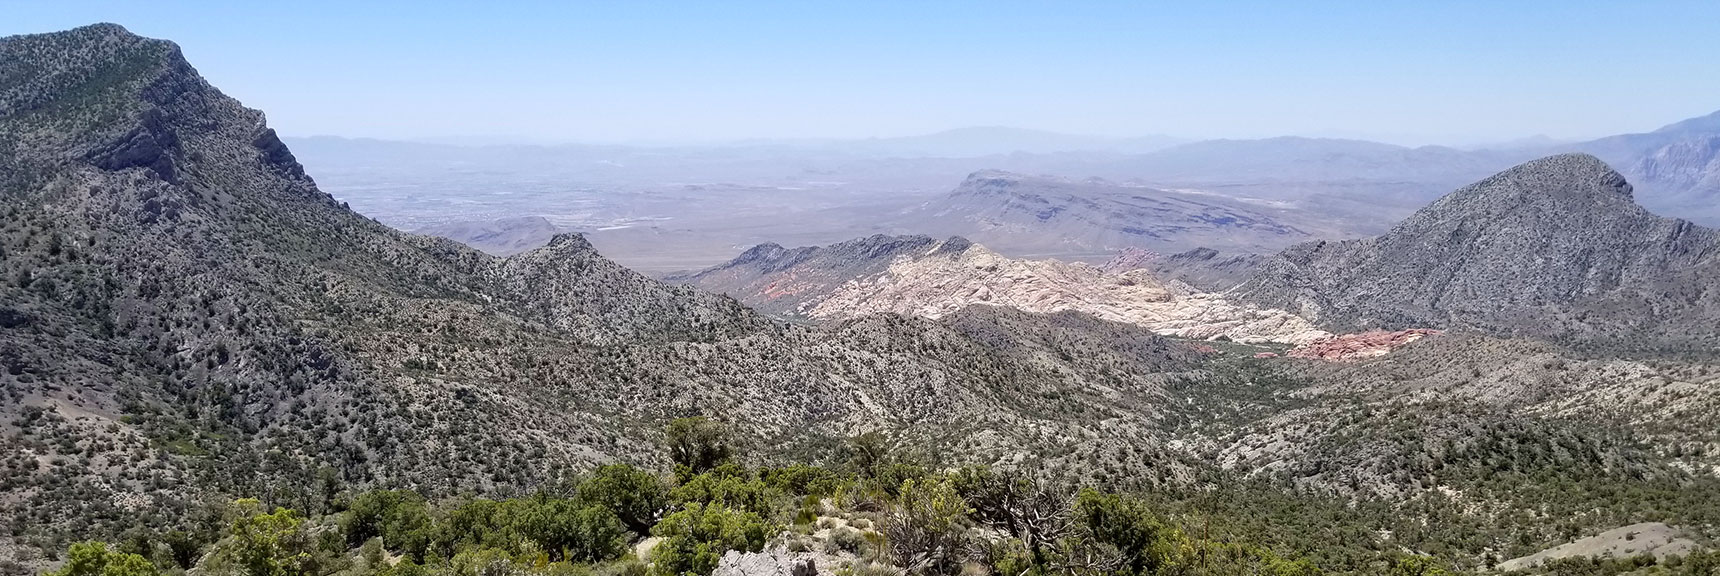 Damsel Peak (left) Calico Basin (middle) Damsel Peak (right) from North East Edge of Keystone Thrust